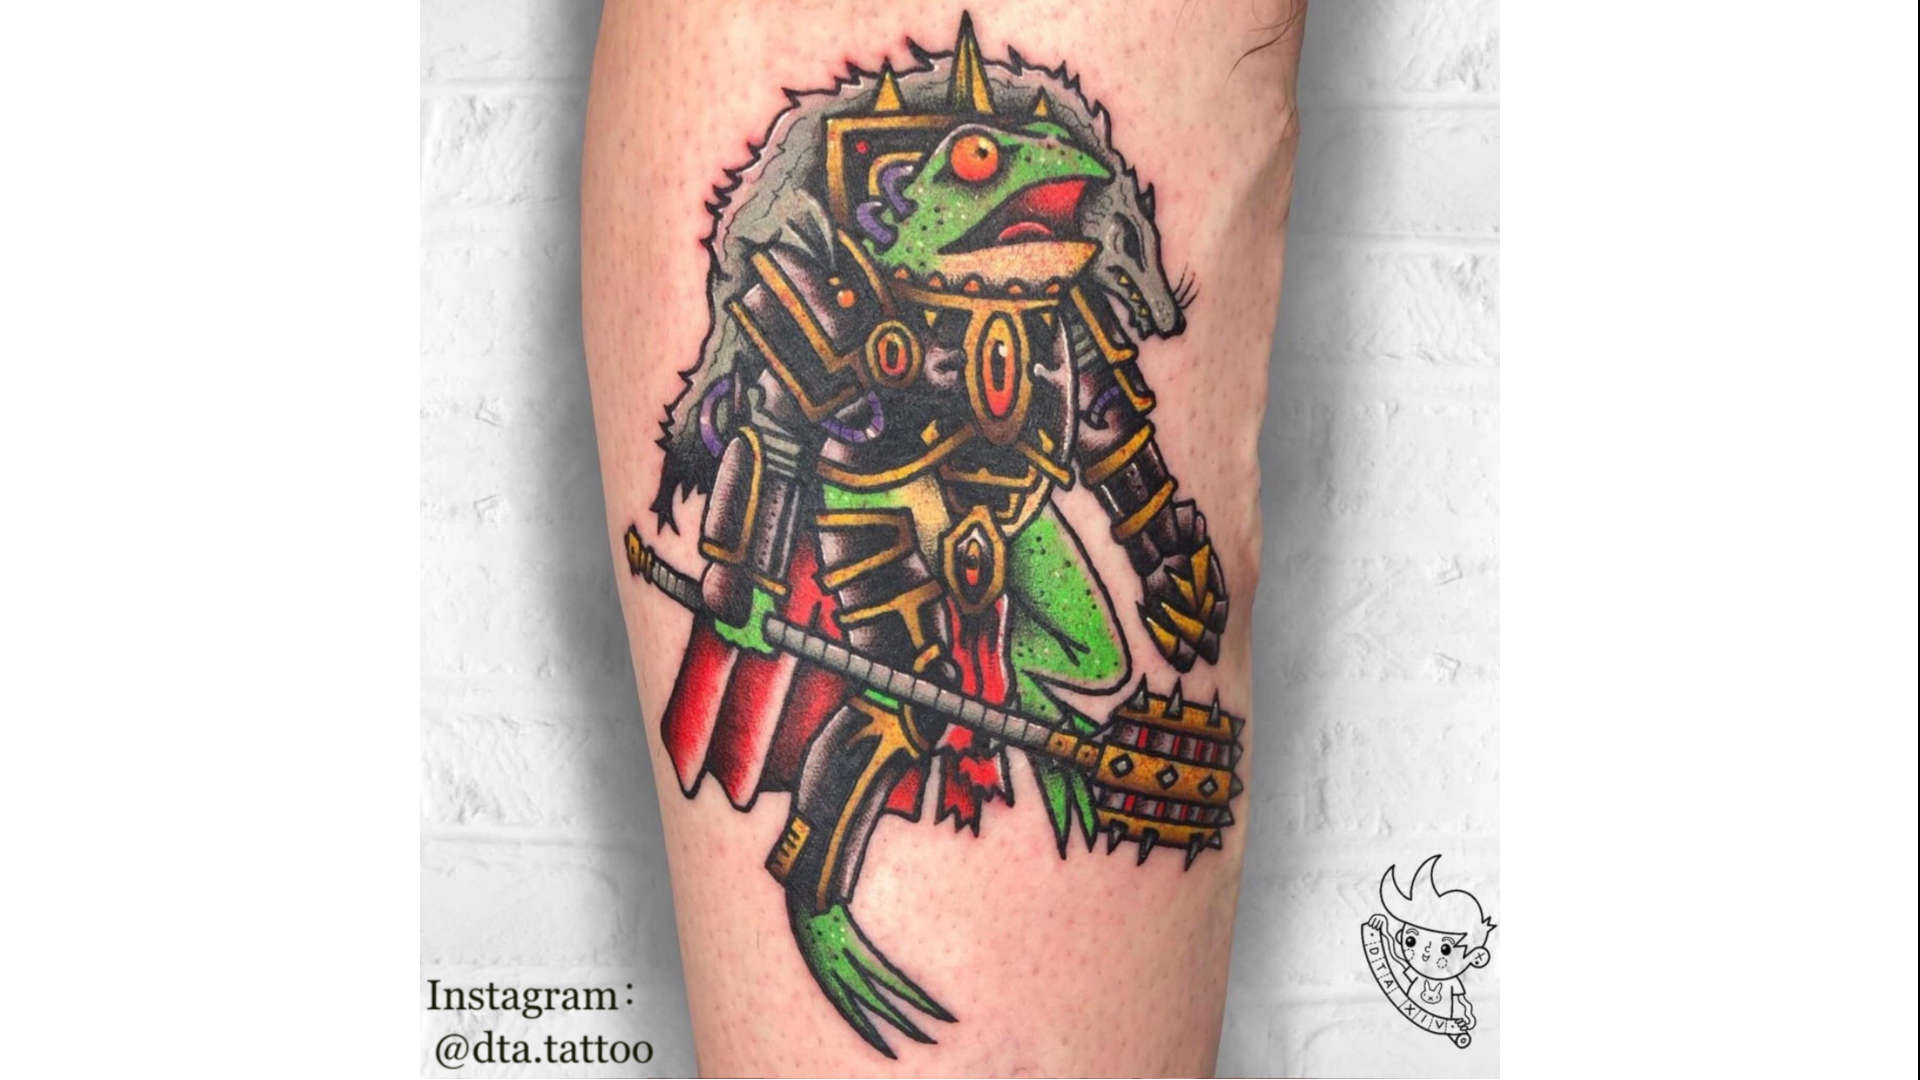 Tattoos by Matt Brumelow